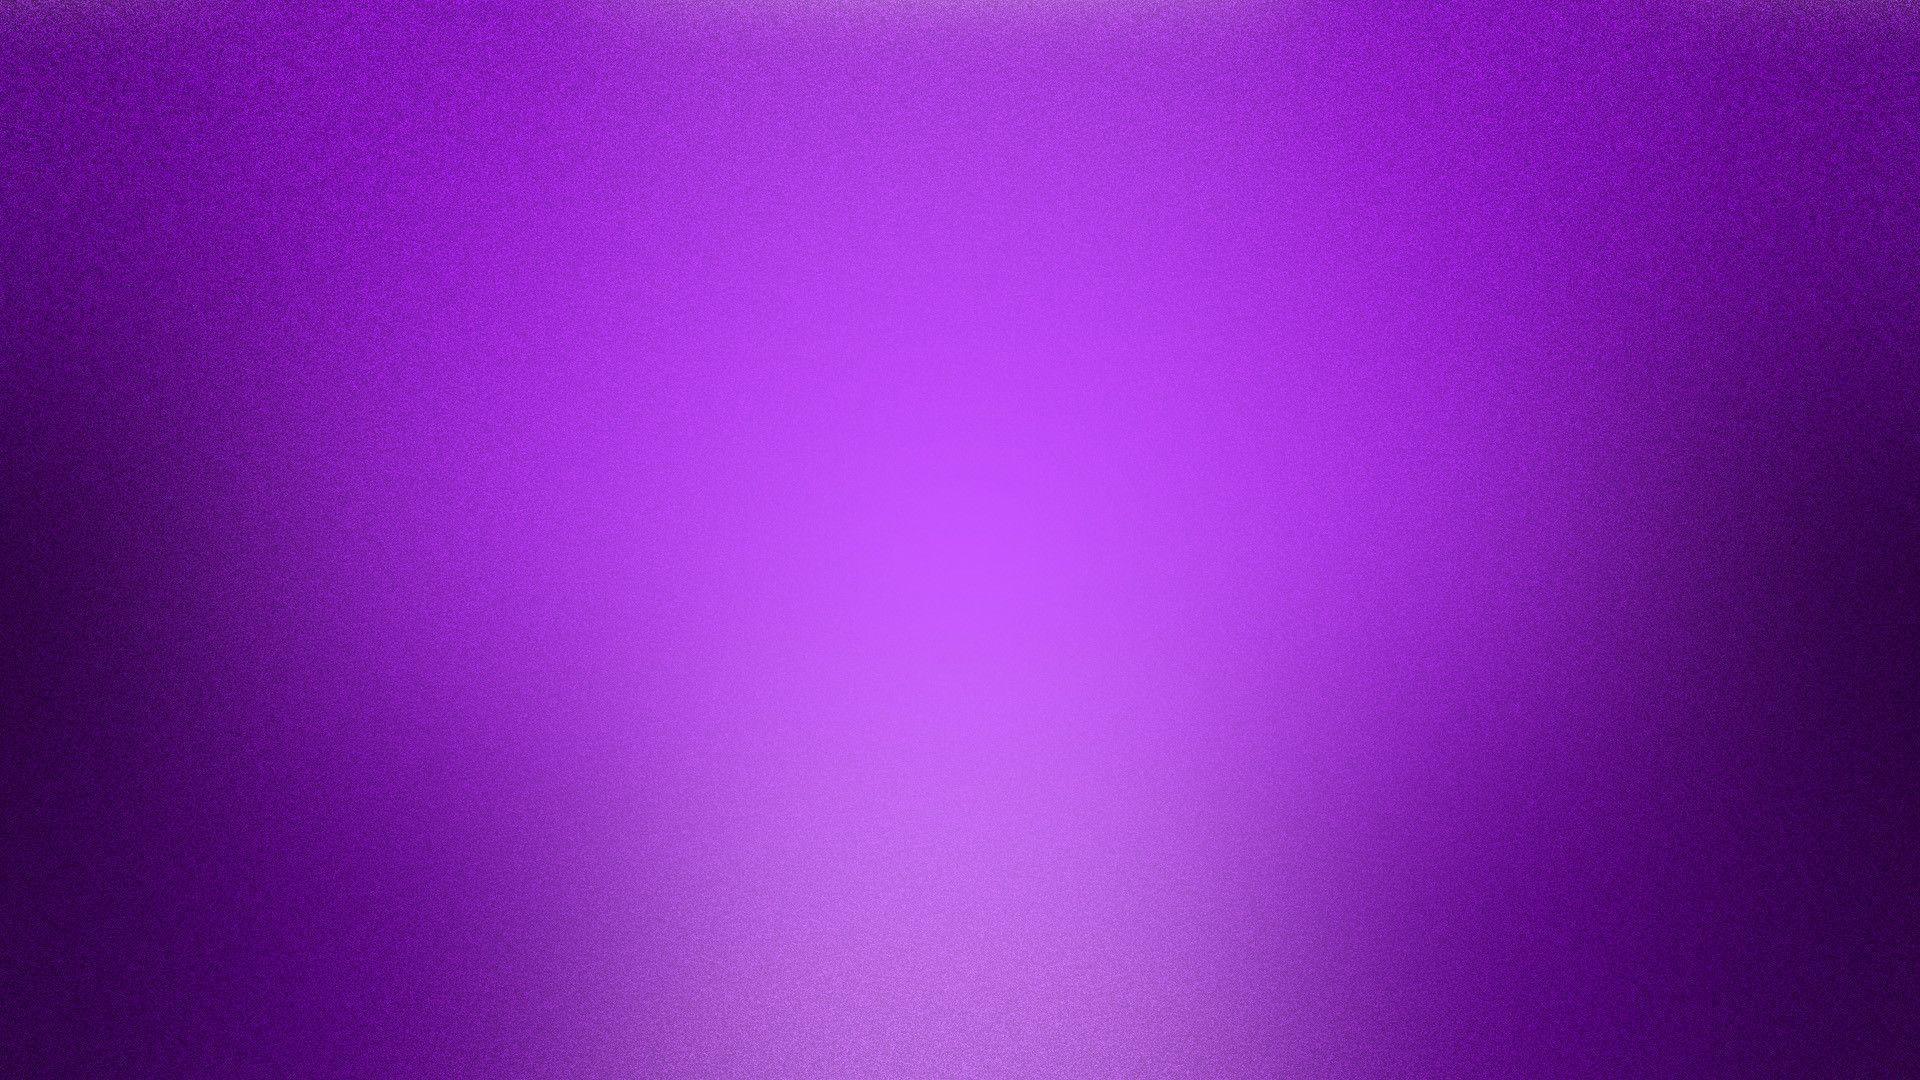 1920x1080 Plain Purple Backgrounds